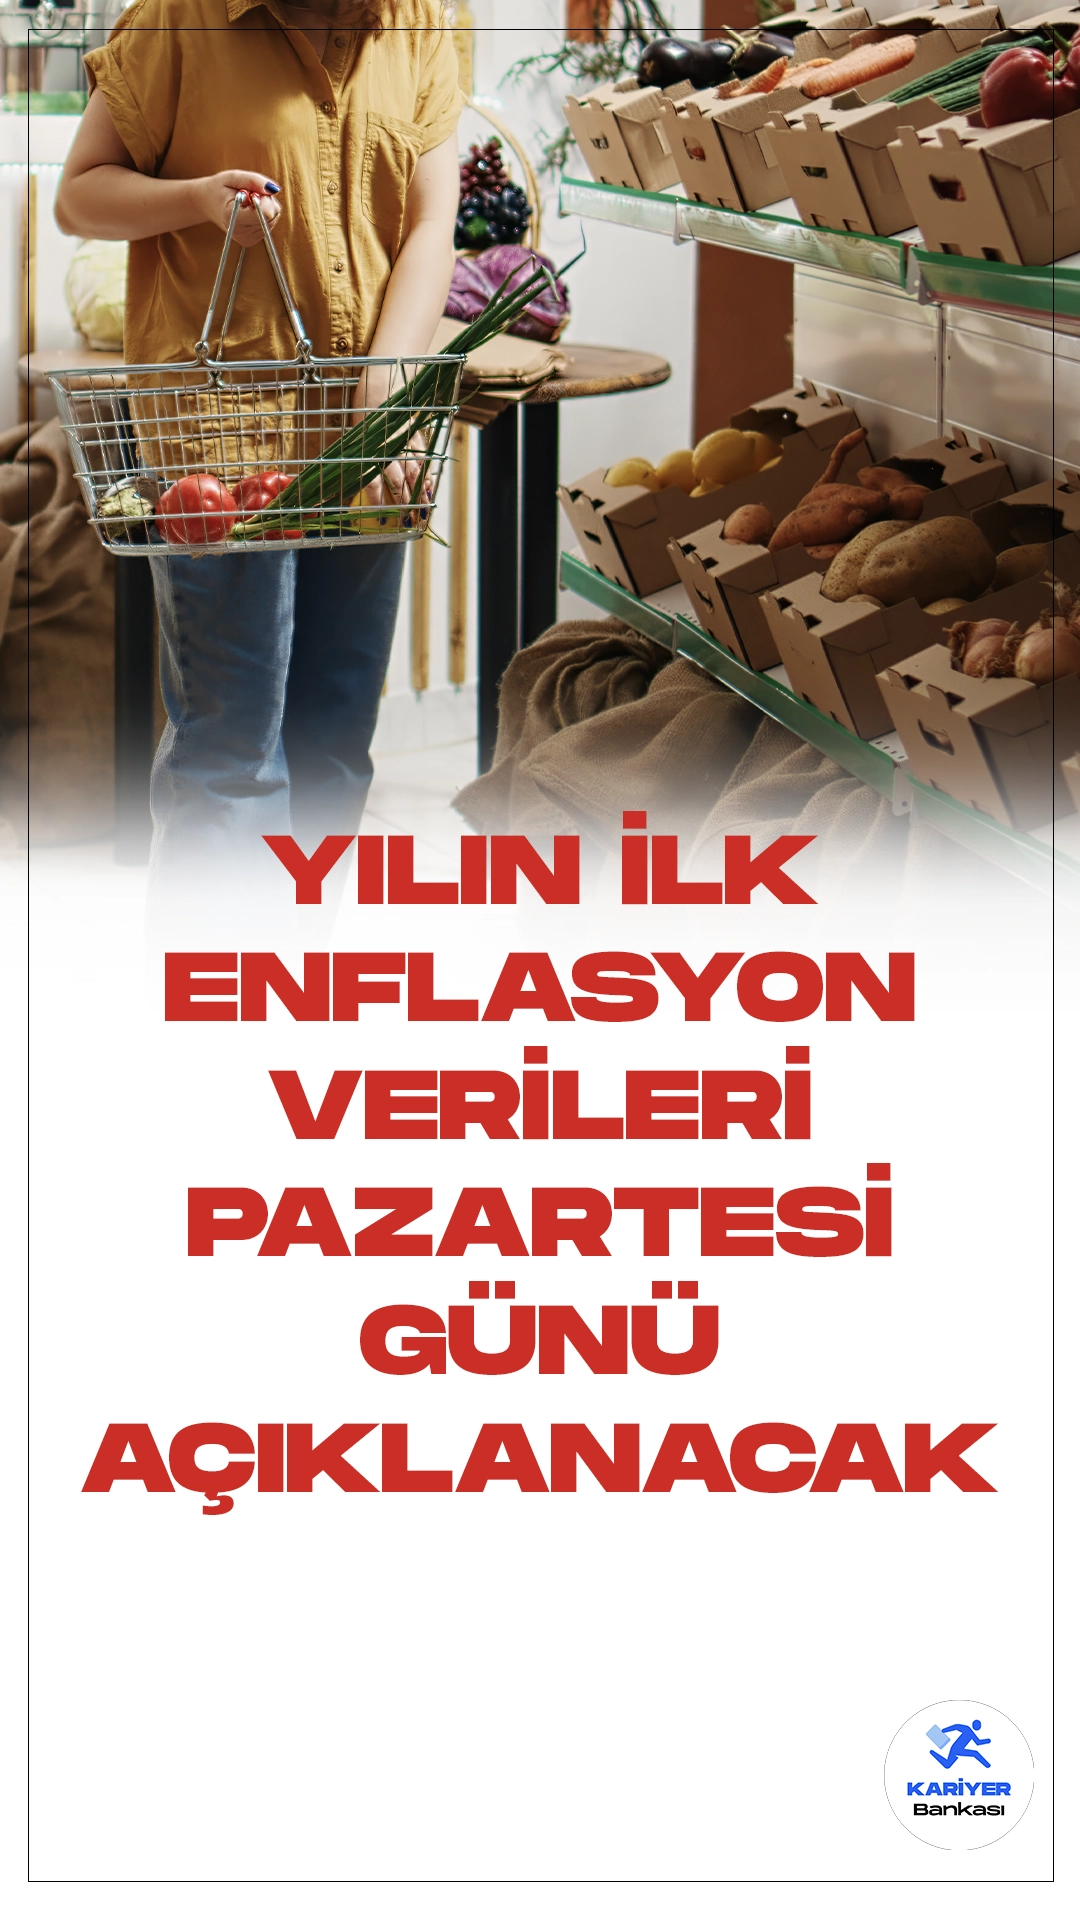 Ocak Ayı Enflasyon Verileri Pazartesi Günü Açıklanacak.Ocak ayı enflasyon rakamları, Türkiye İstatistik Kurumu tarafından pazartesi günü kamuoyuyla paylaşılacak. Ekonomistler, TÜFE'nin bu dönemde %6,84 oranında artış göstereceğini öngörüyor.